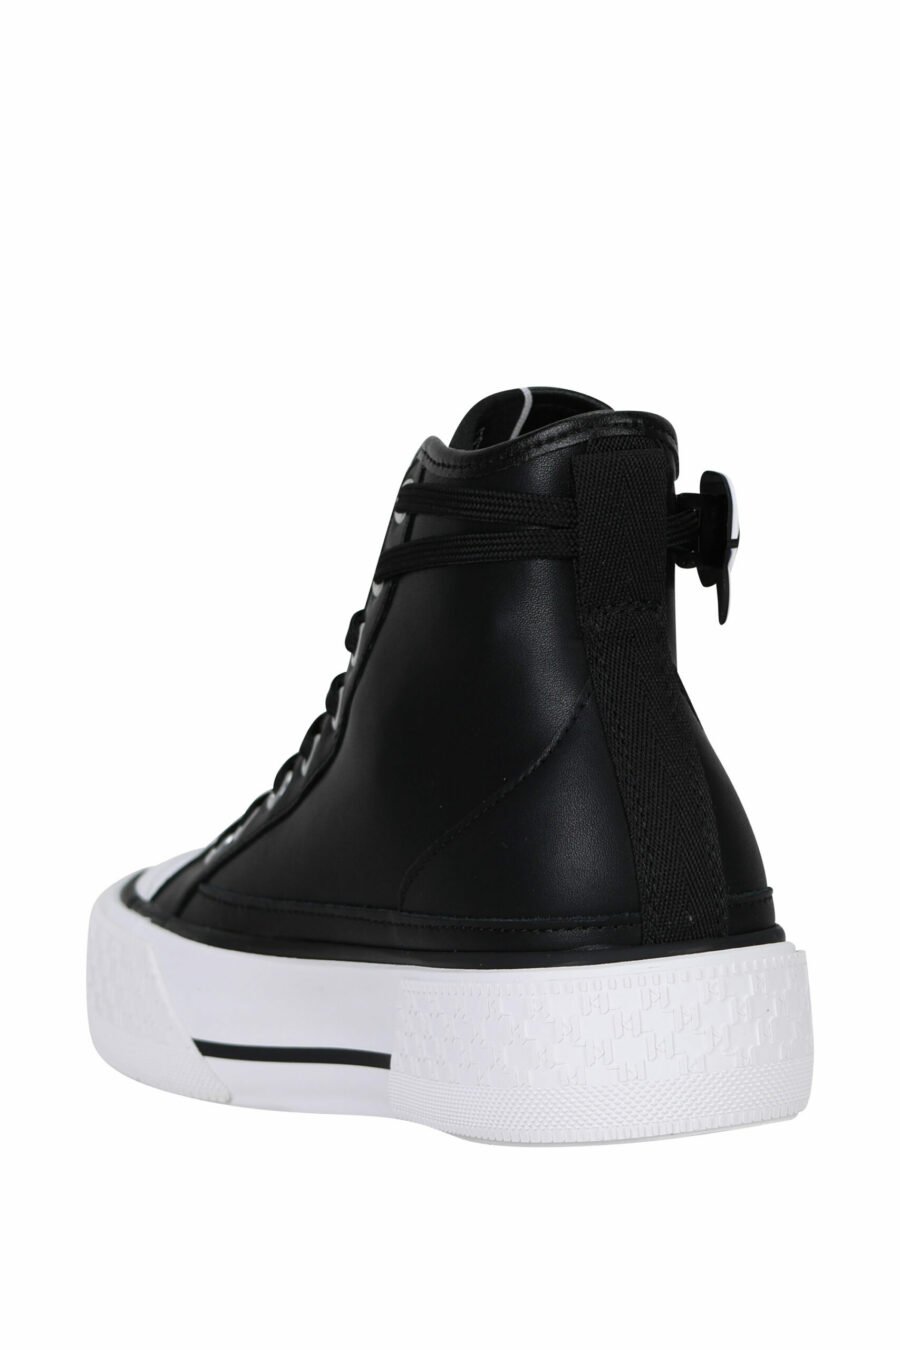 Zapatillas negras altas de cuero con suela blanca y logo "karl" - 5059529355905 3 scaled